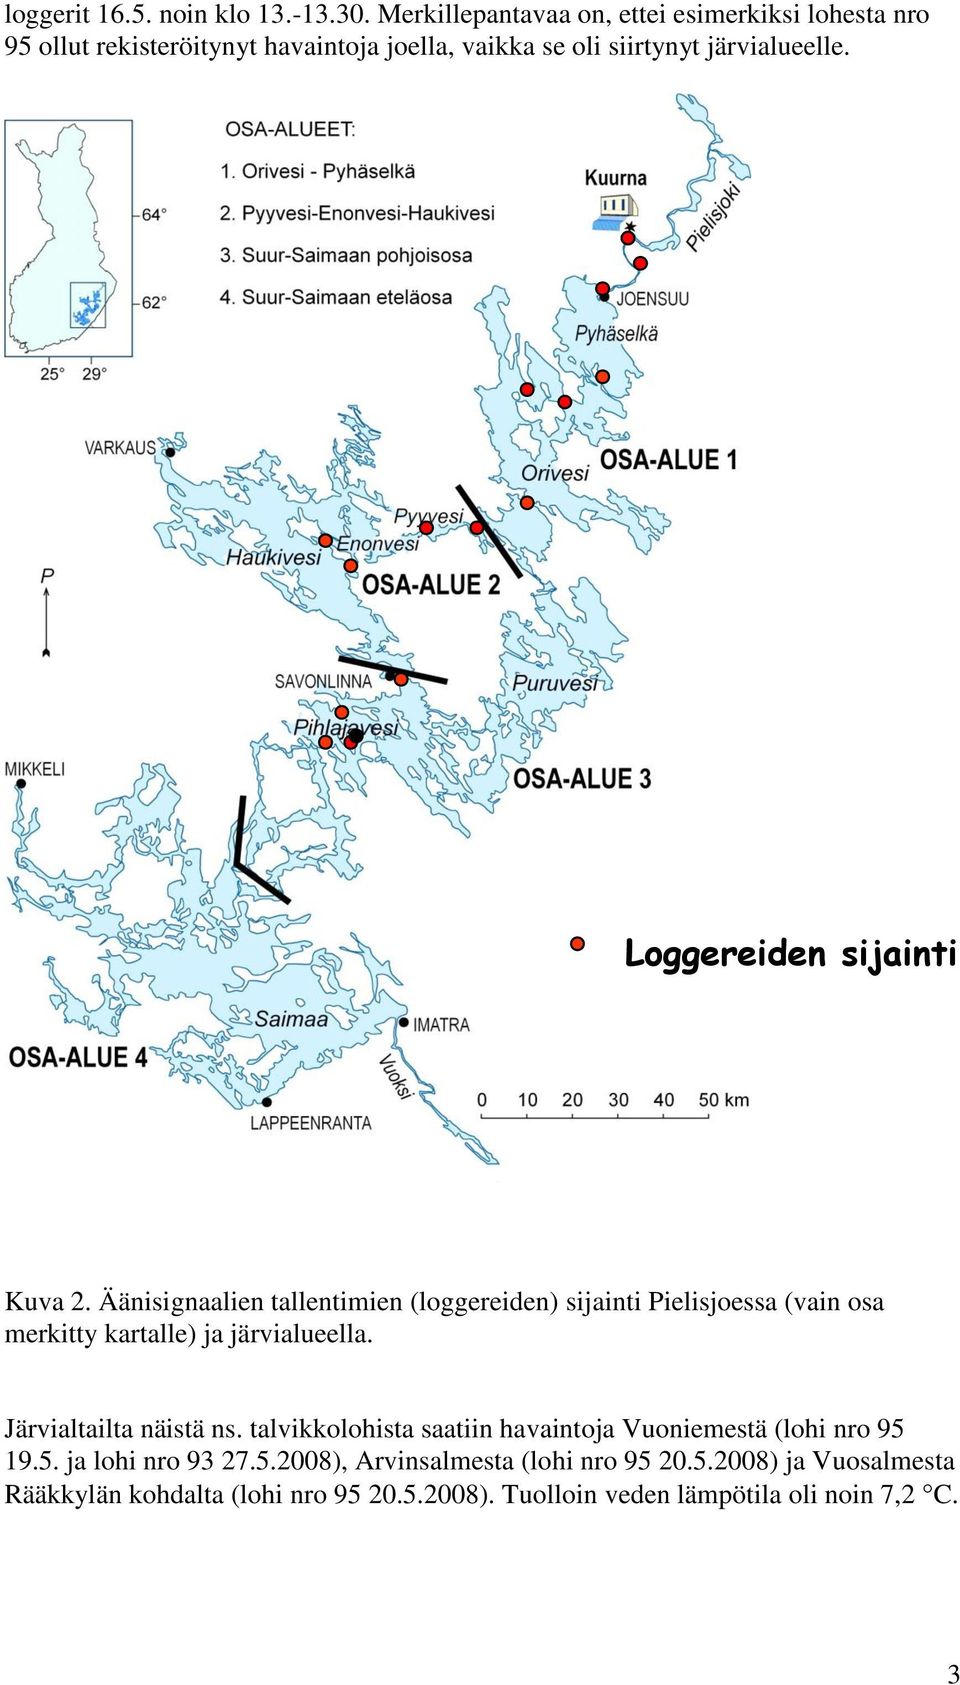 Loggereiden sijainti Kuva 2. Äänisignaalien tallentimien (loggereiden) sijainti Pielisjoessa (vain osa merkitty kartalle) ja järvialueella.